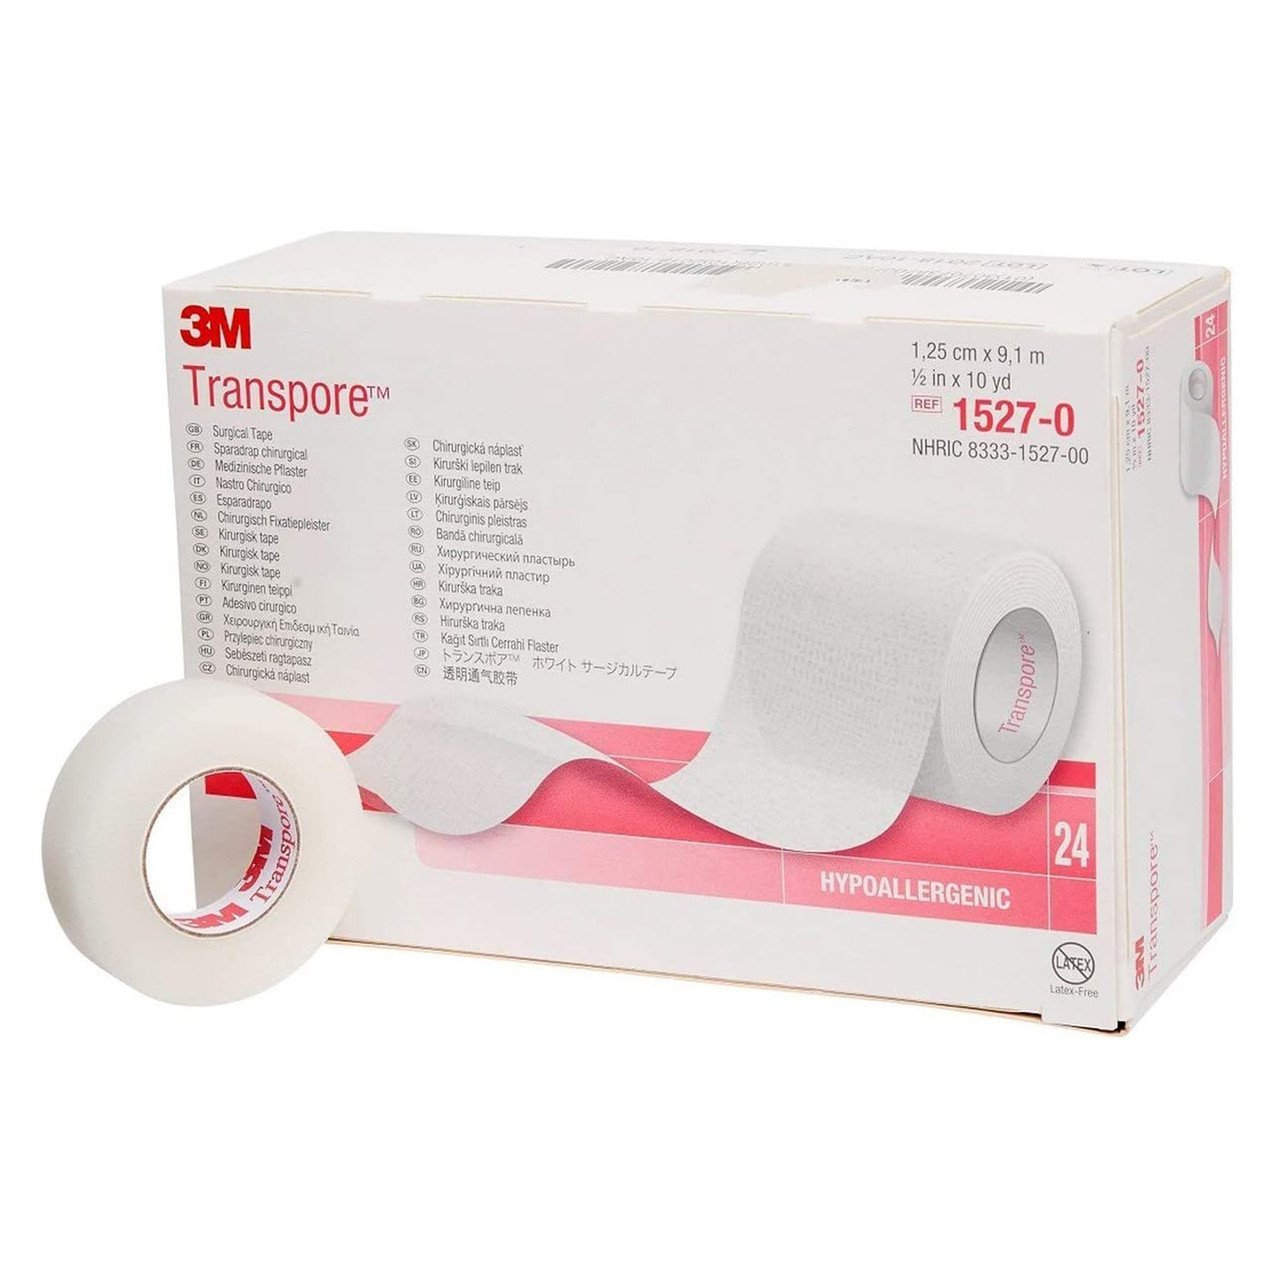 3M™ Transpore™ Sparadrap Plastique Microperforé TR925, Transparent